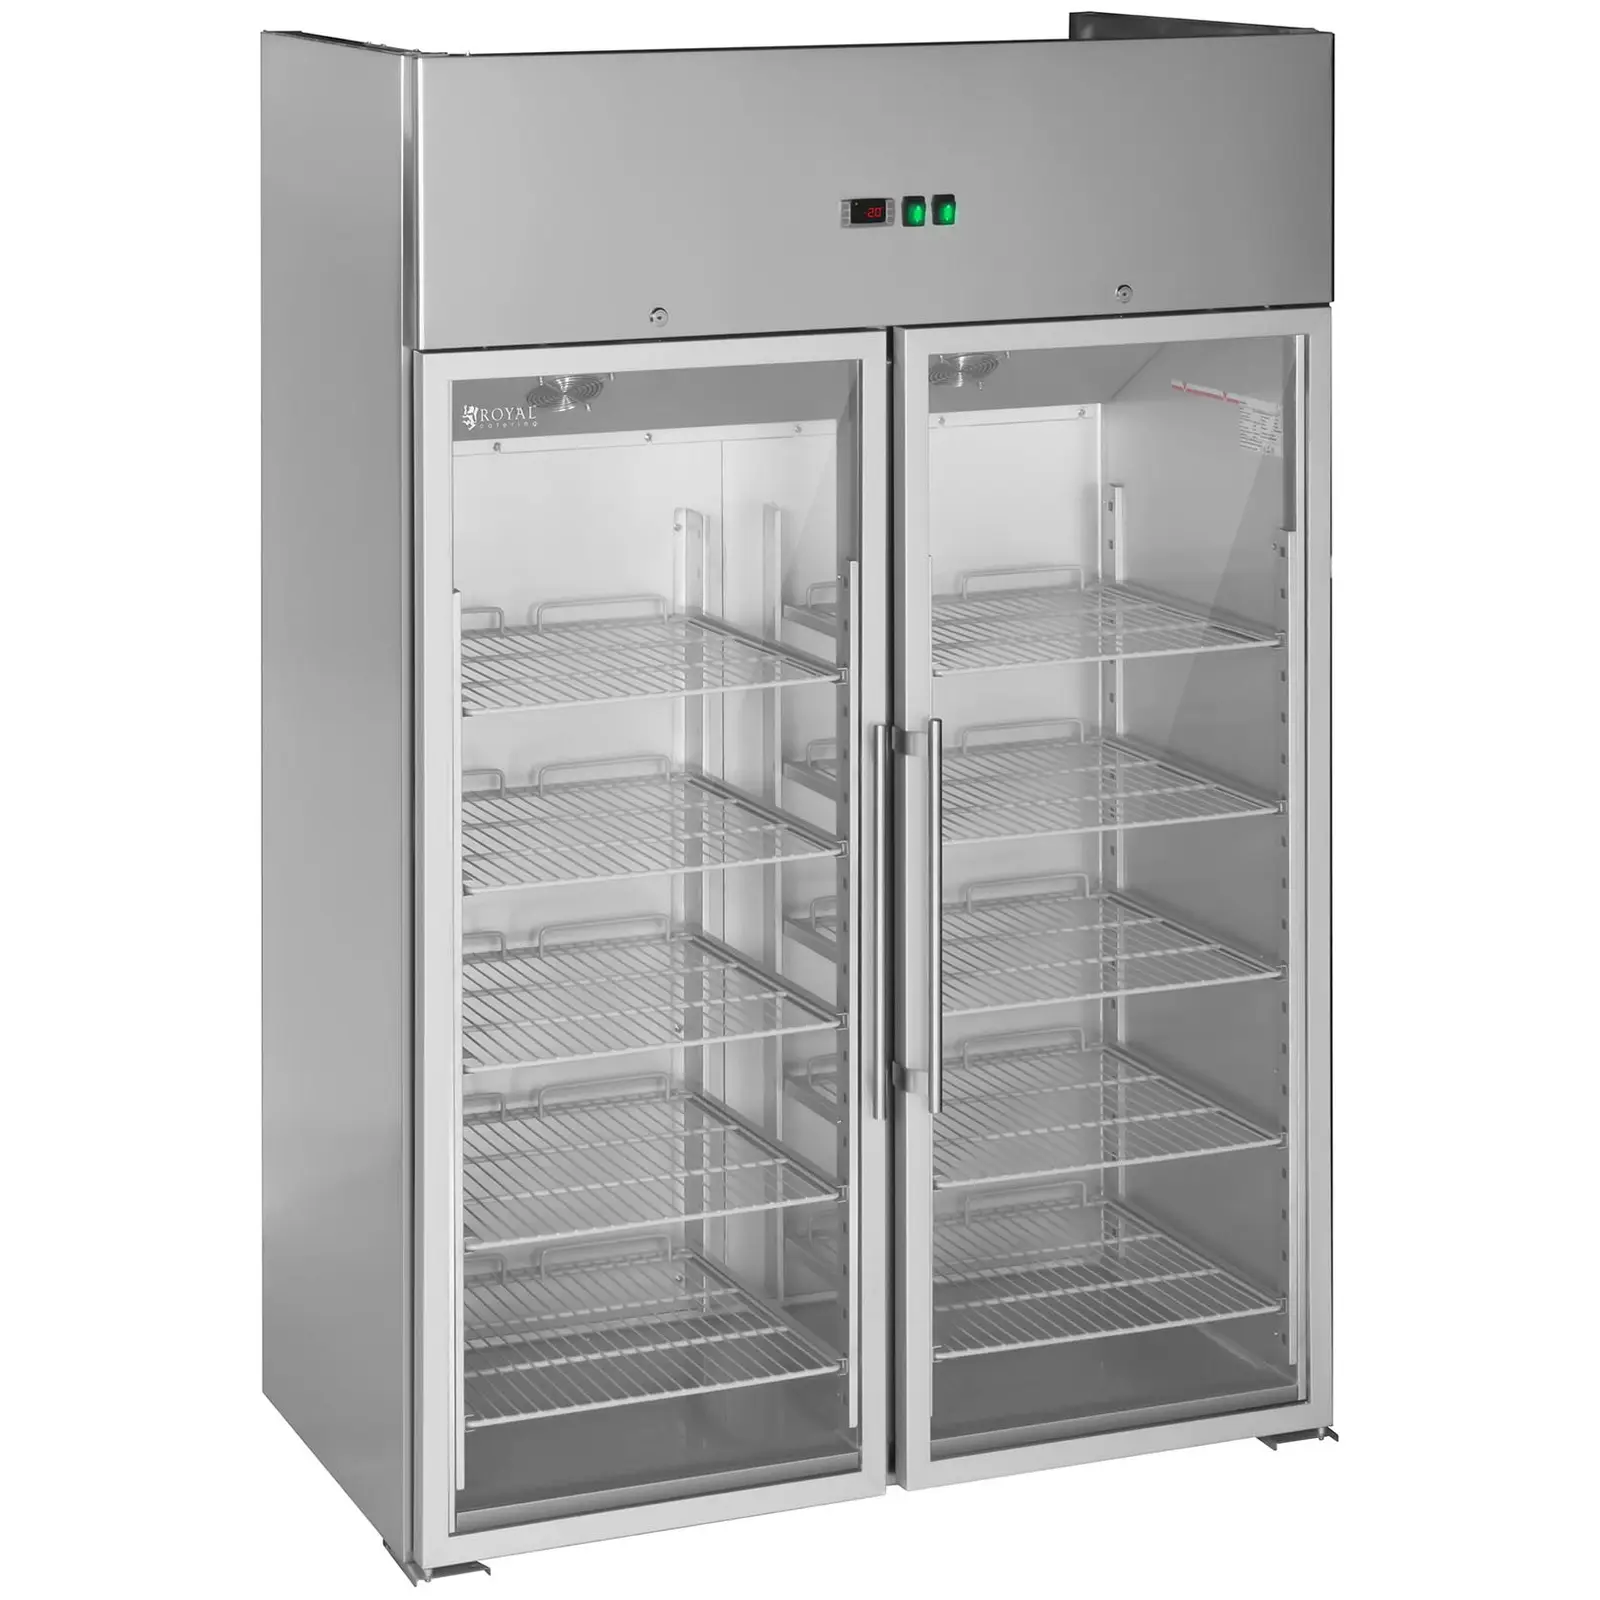 Vendéglátóipari hűtőszekrény két üvegajtóval - 984 l